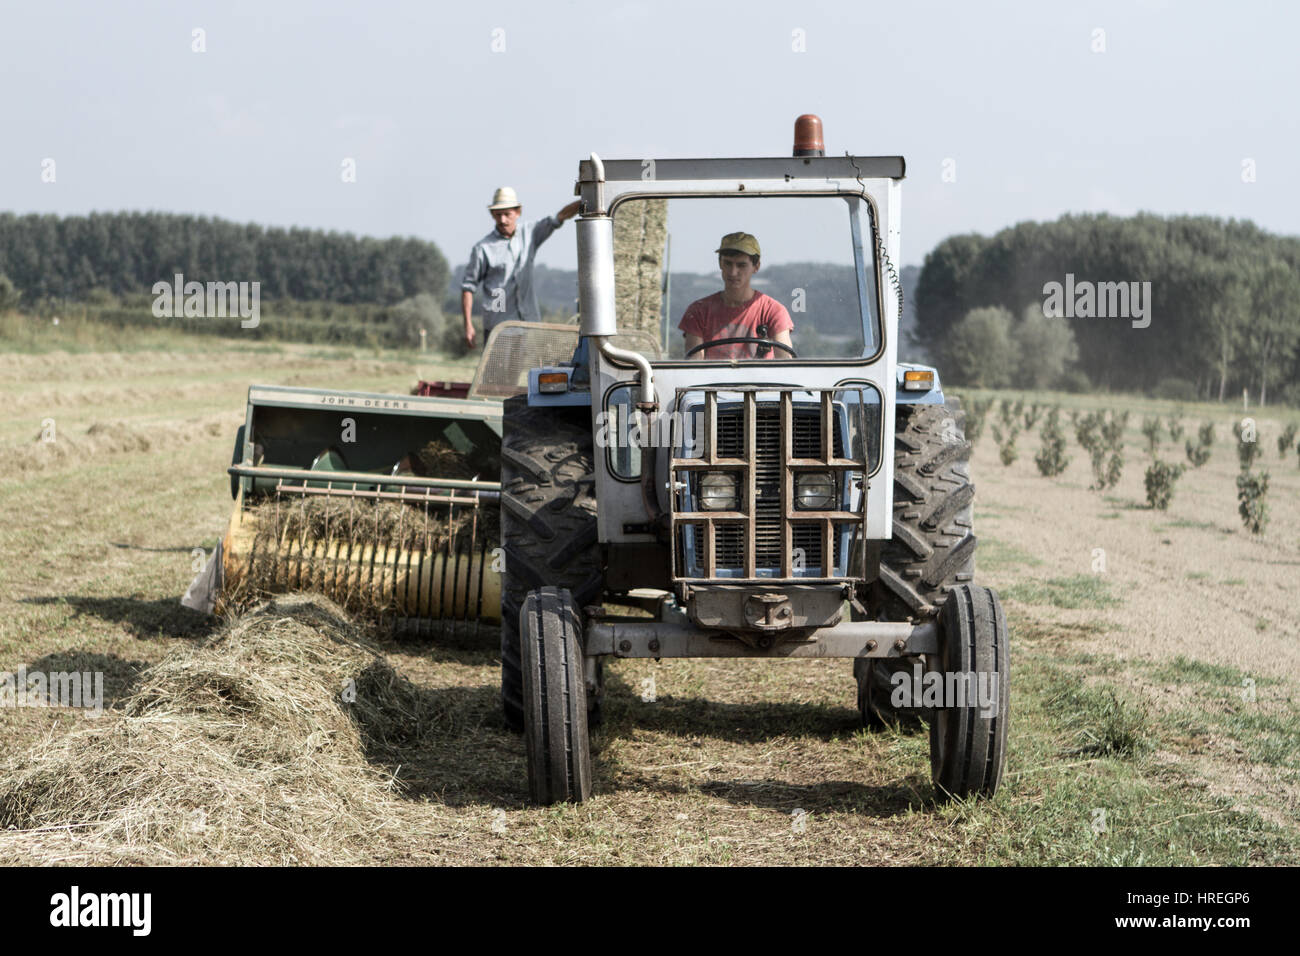 Deux hommes sur un tracteur foin récolte à Magliano Alfieri, qui est situé dans la province du Piémont, en Italie. Banque D'Images